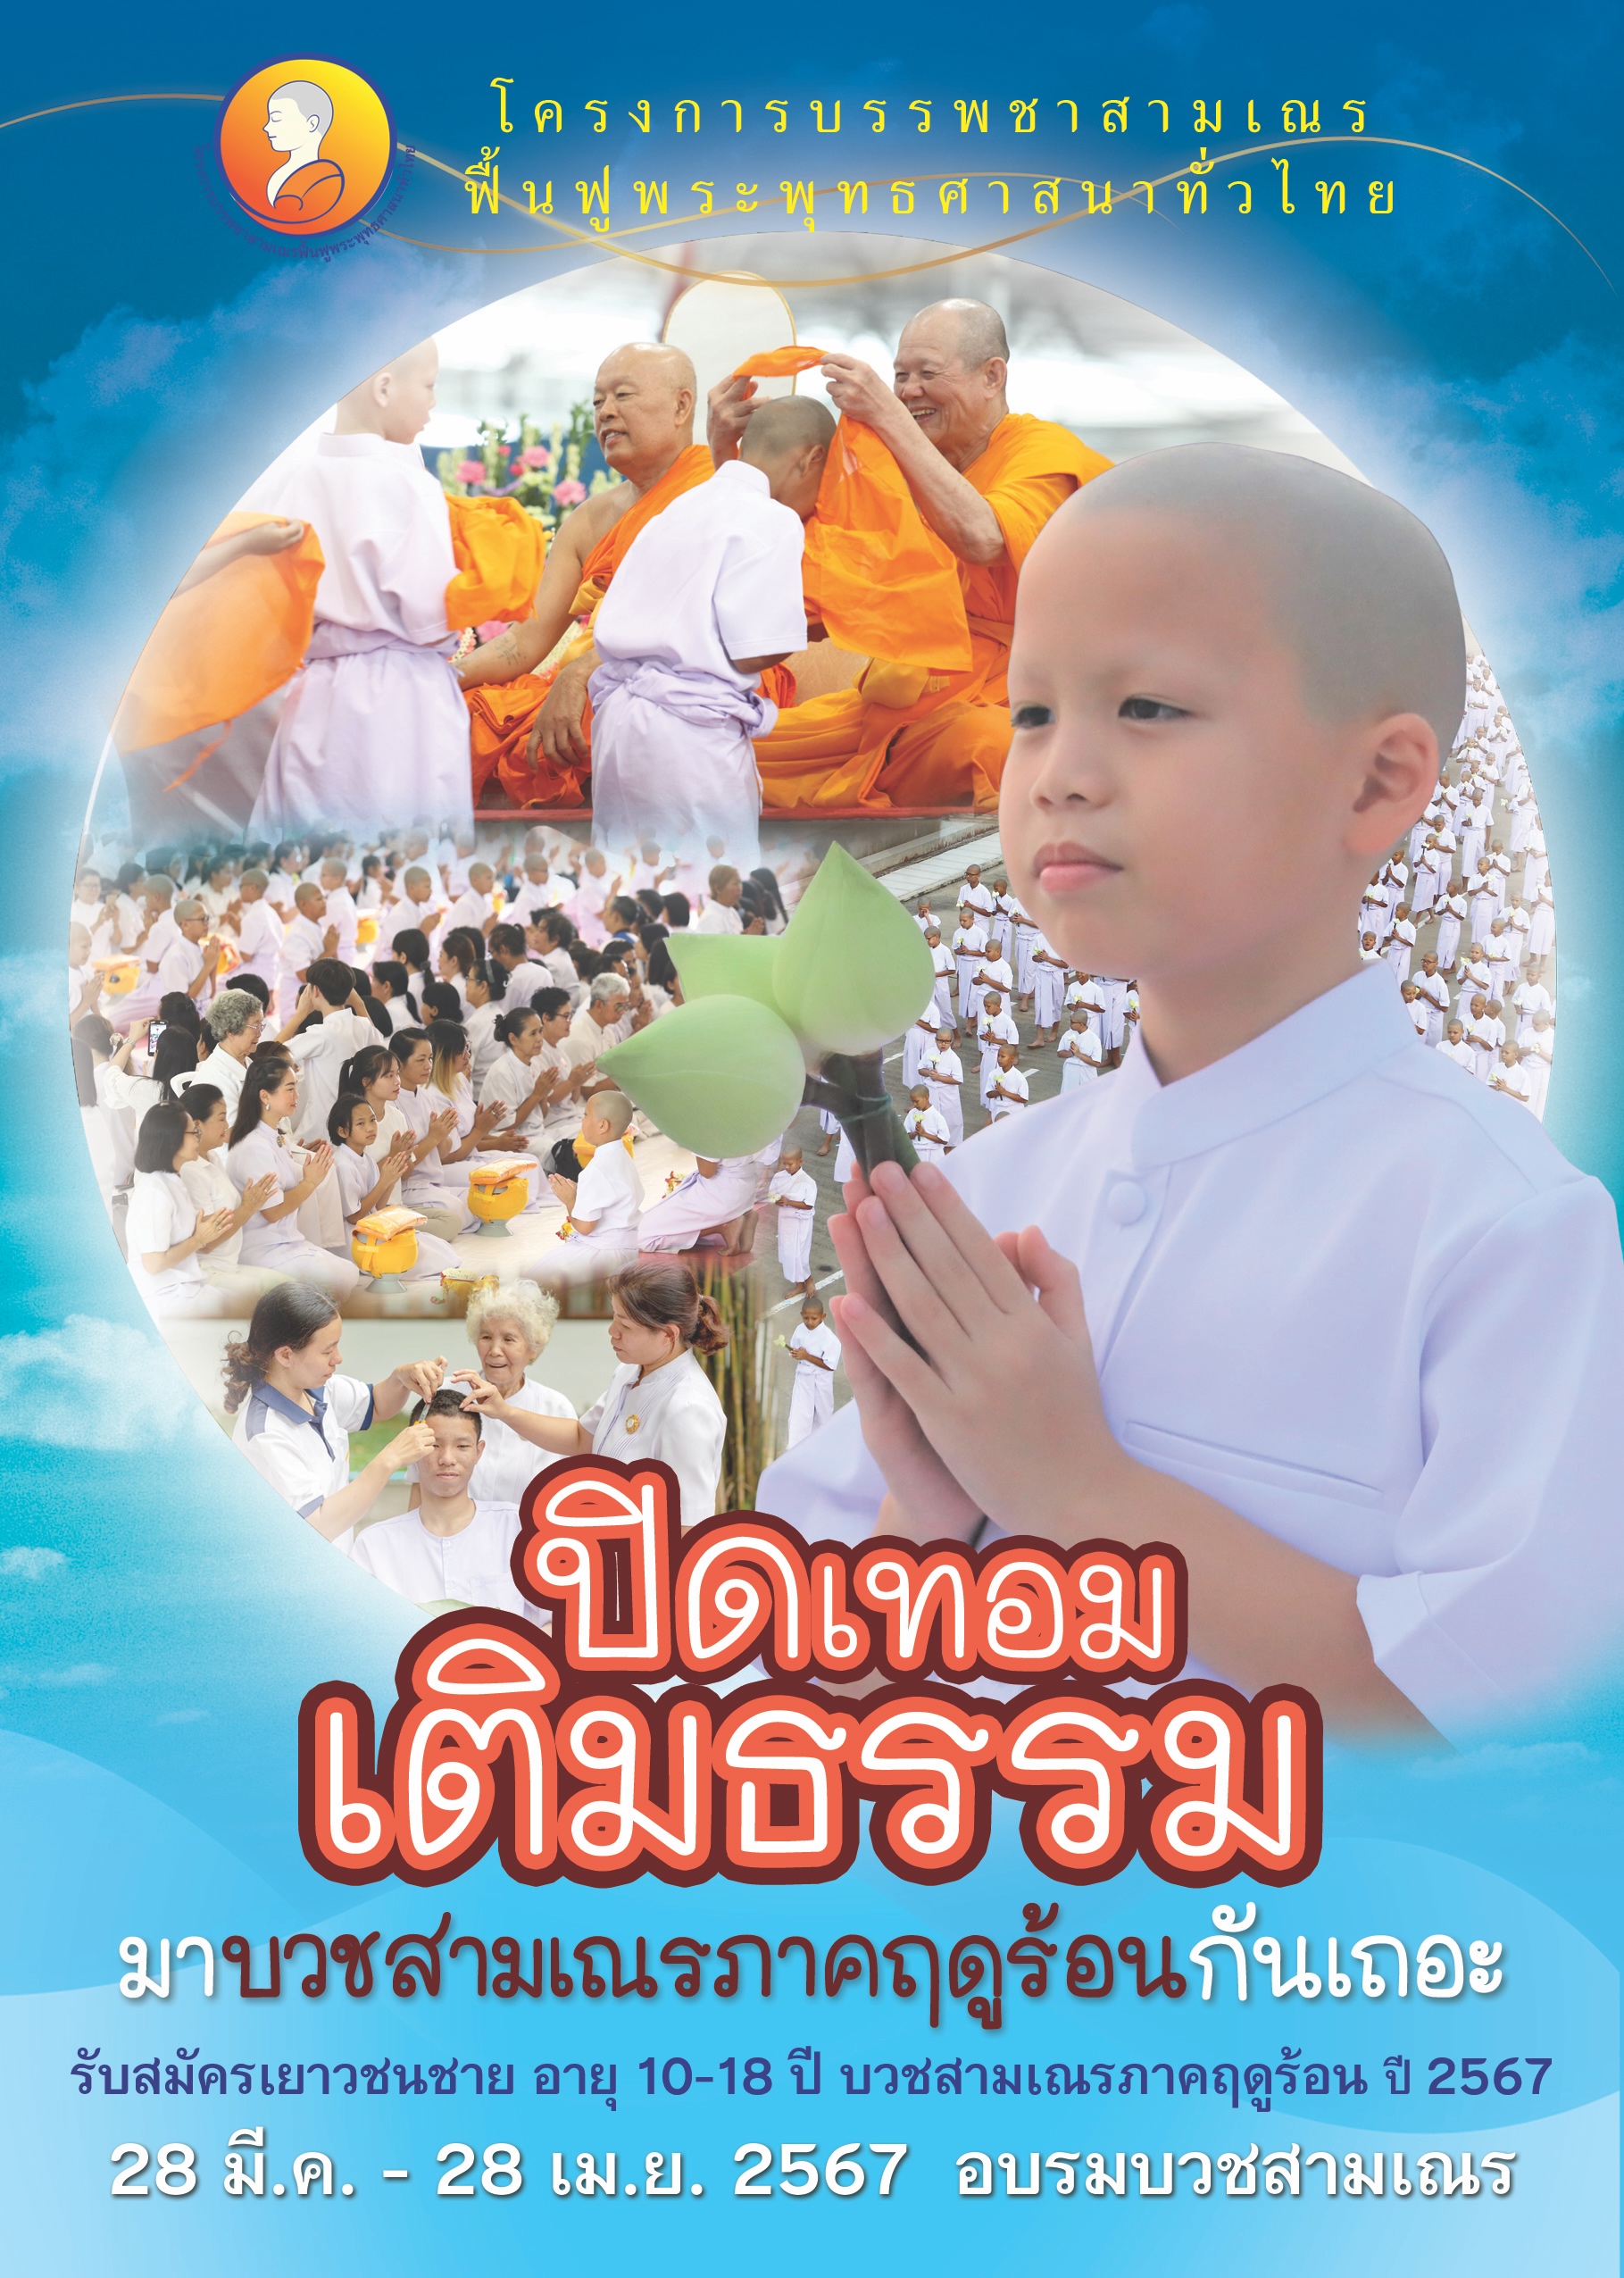 โครงการ บรรพชาสามเณรฟื้นฟูพระพุทธศาสนาทั่วไทย ประจำปี 2567